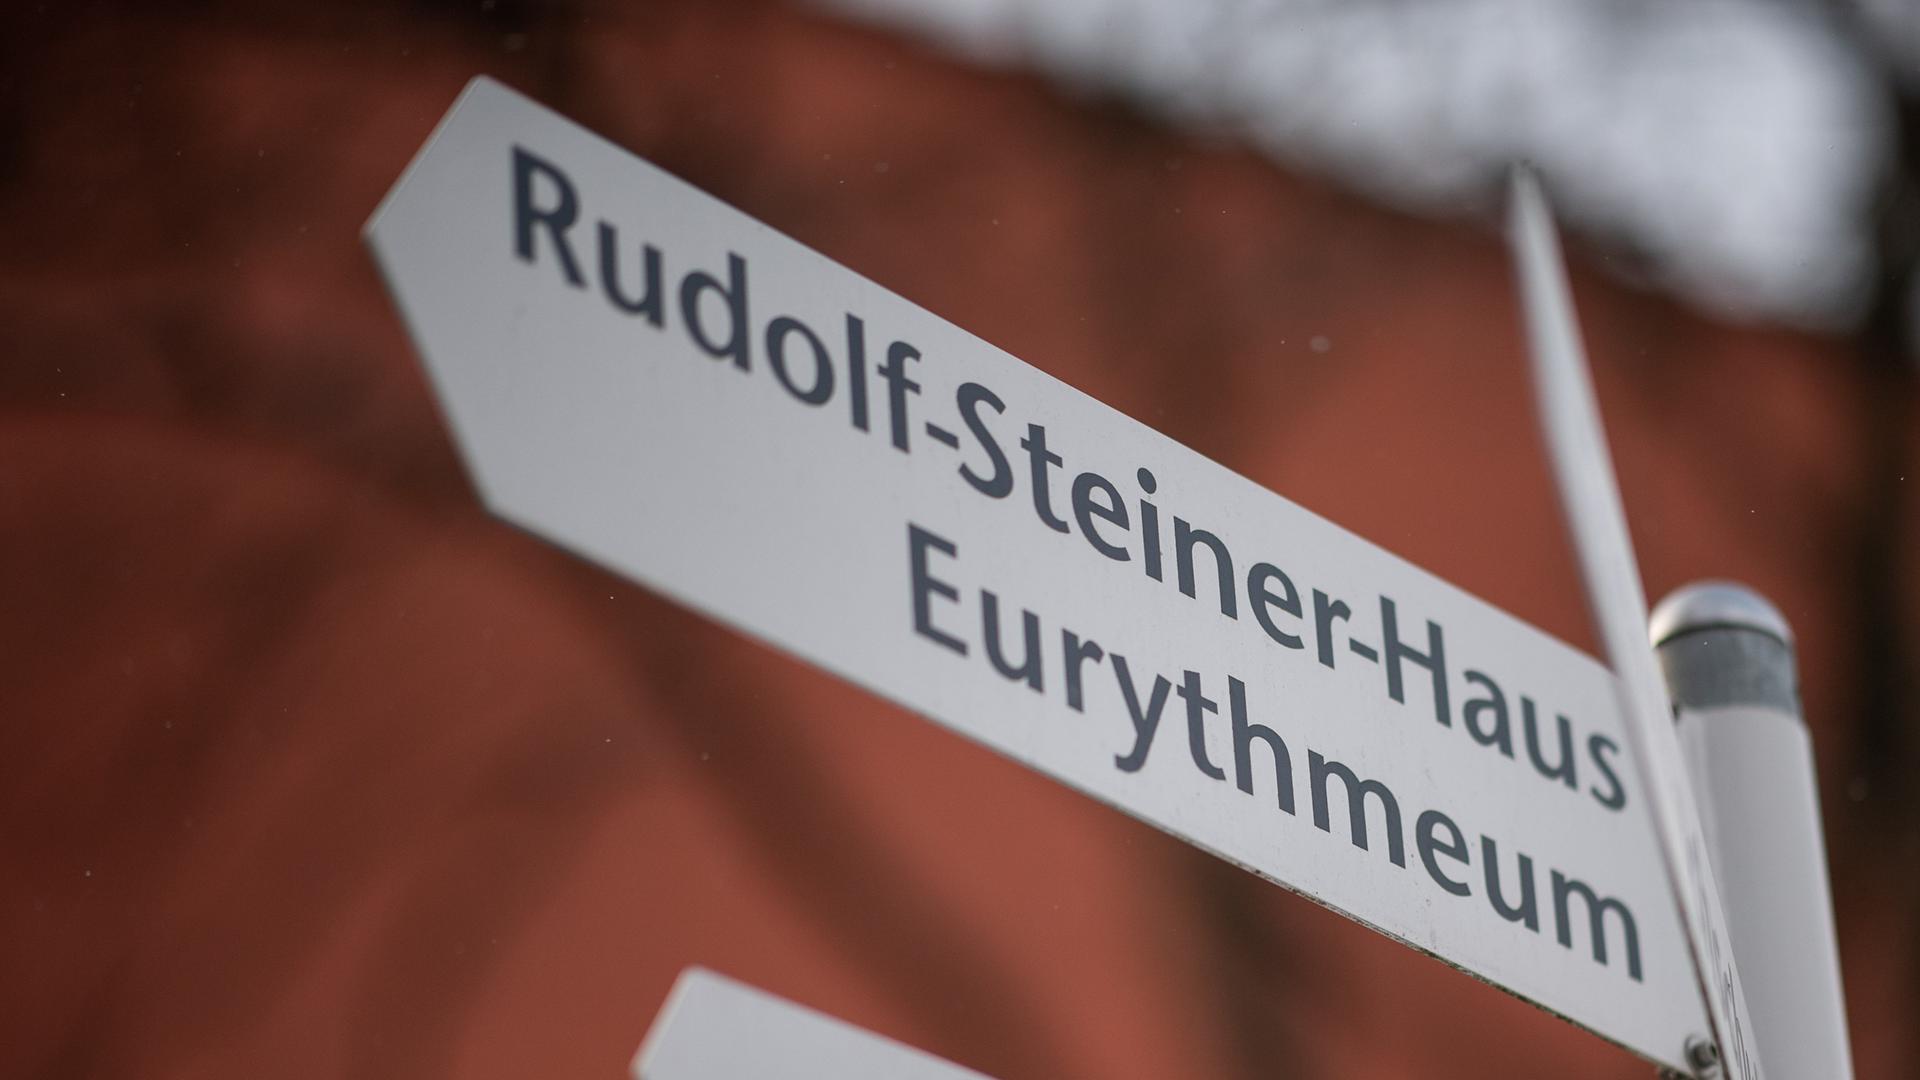 Ein Schild weist in einer Freien Waldorfschule den Weg zum Rudolf-Steiner-Haus und zum Eurythmeum